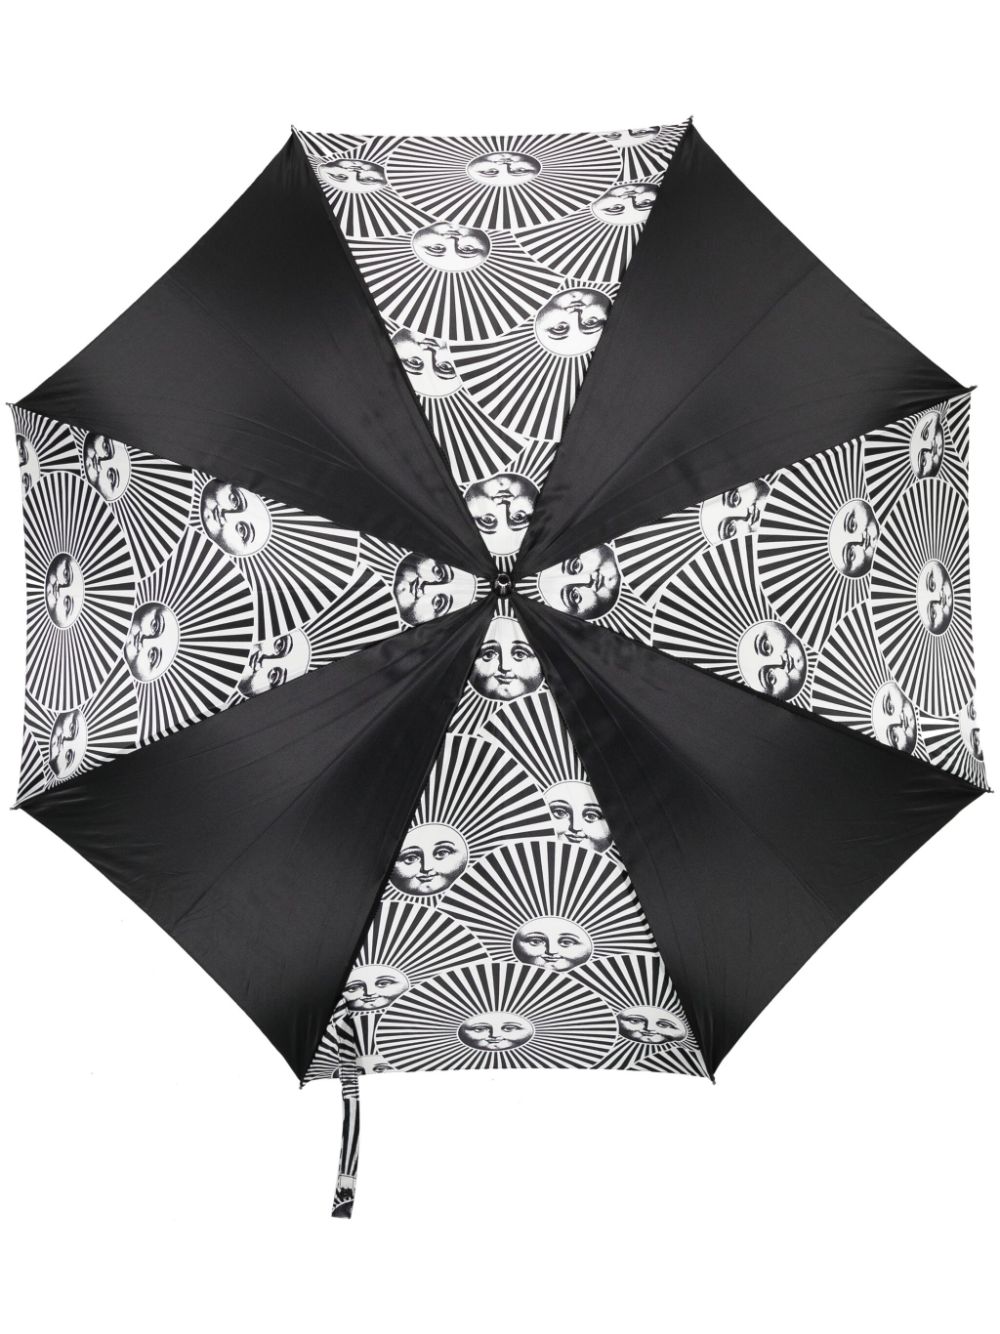 Fornasetti Soli a Ventaglio printed umbrella - Black von Fornasetti